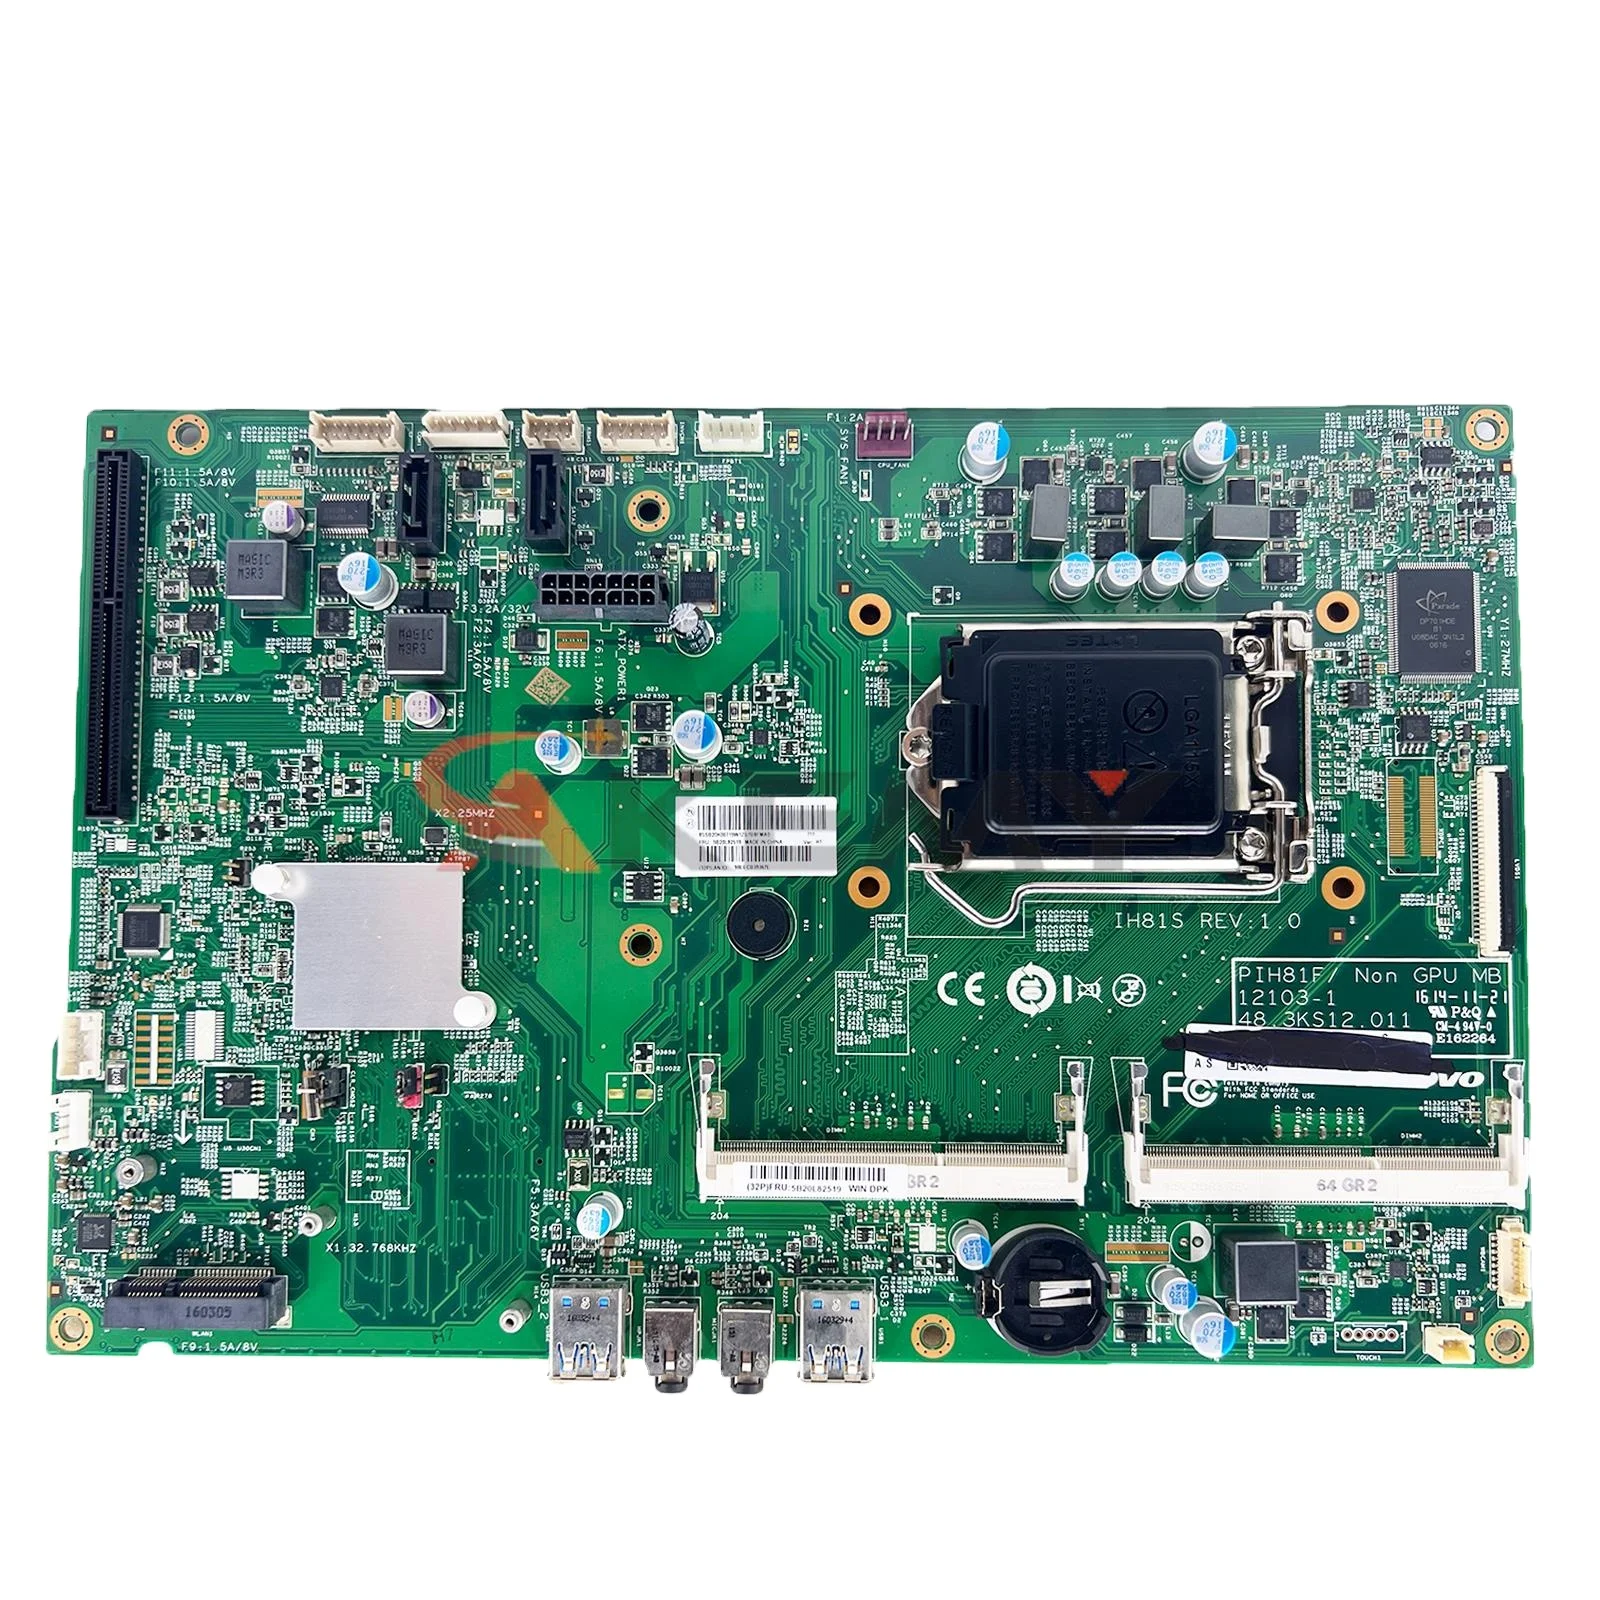 

IH81S For Lenovo S520 S3040 M7200z M7250z AIO Motherboard PIH81F 12103-1 48.3KS08.011 Mainboard 100%Work